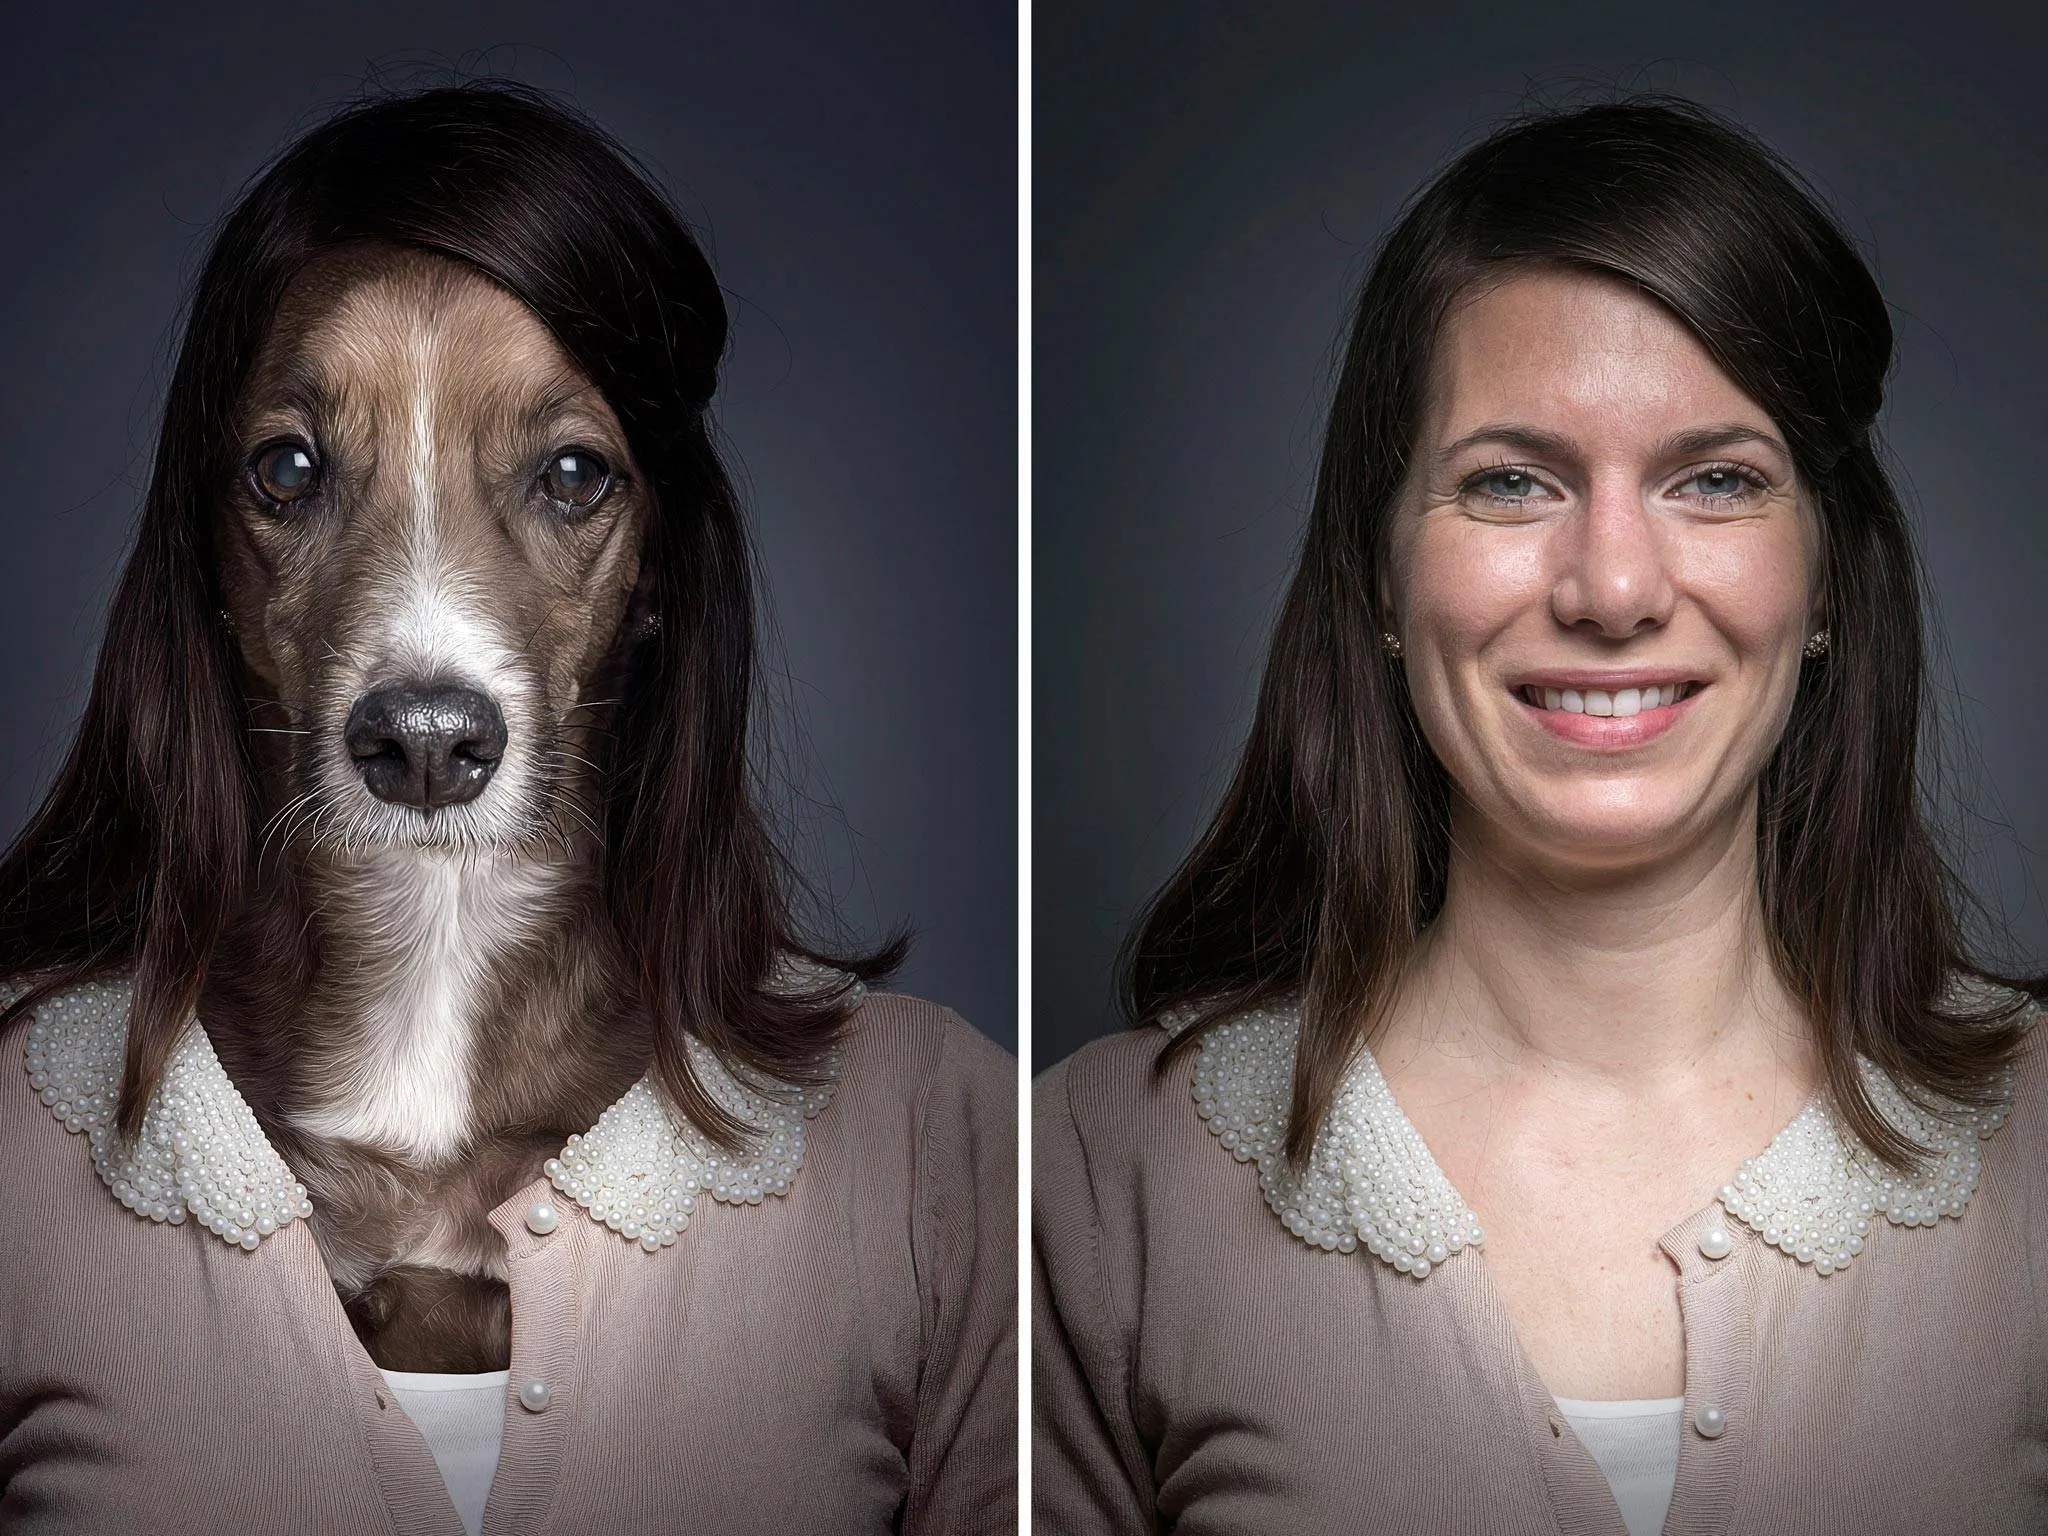 Человек стал животным. Себастьян Маньяни фотограф. Женщина с лицом собаки.